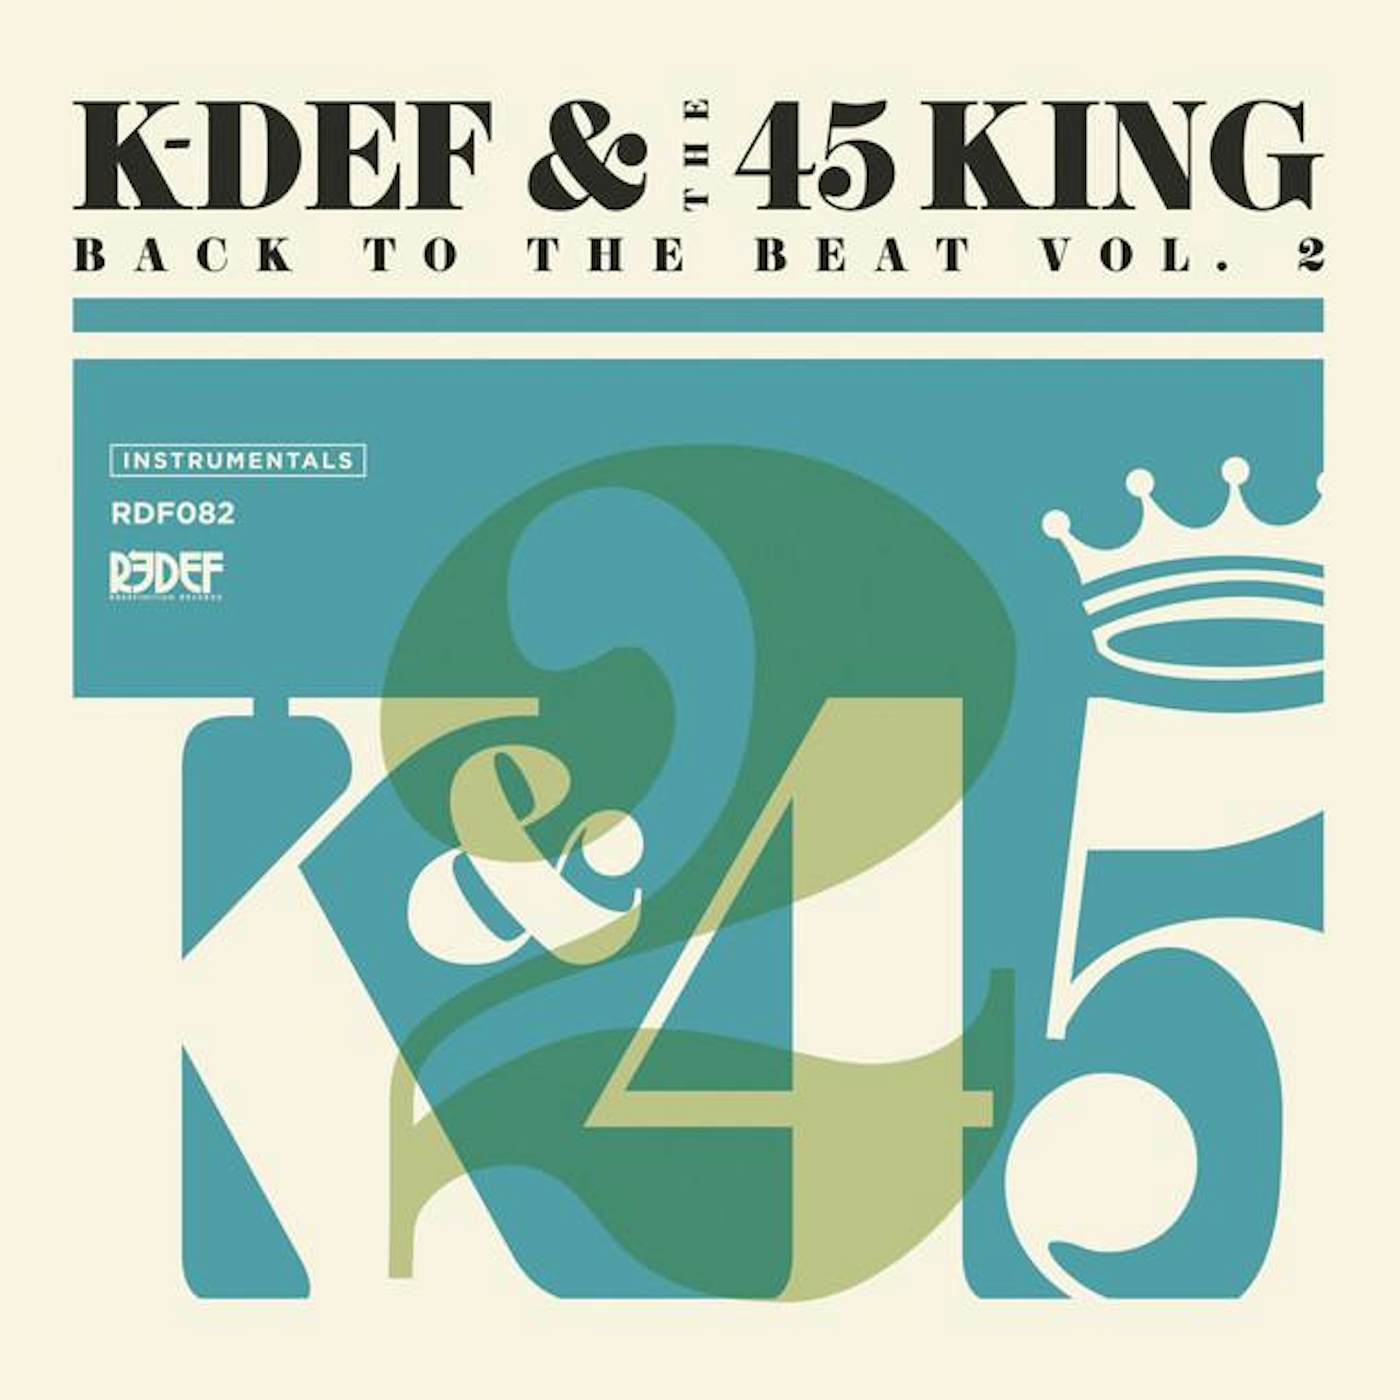 K-Def & 45 King